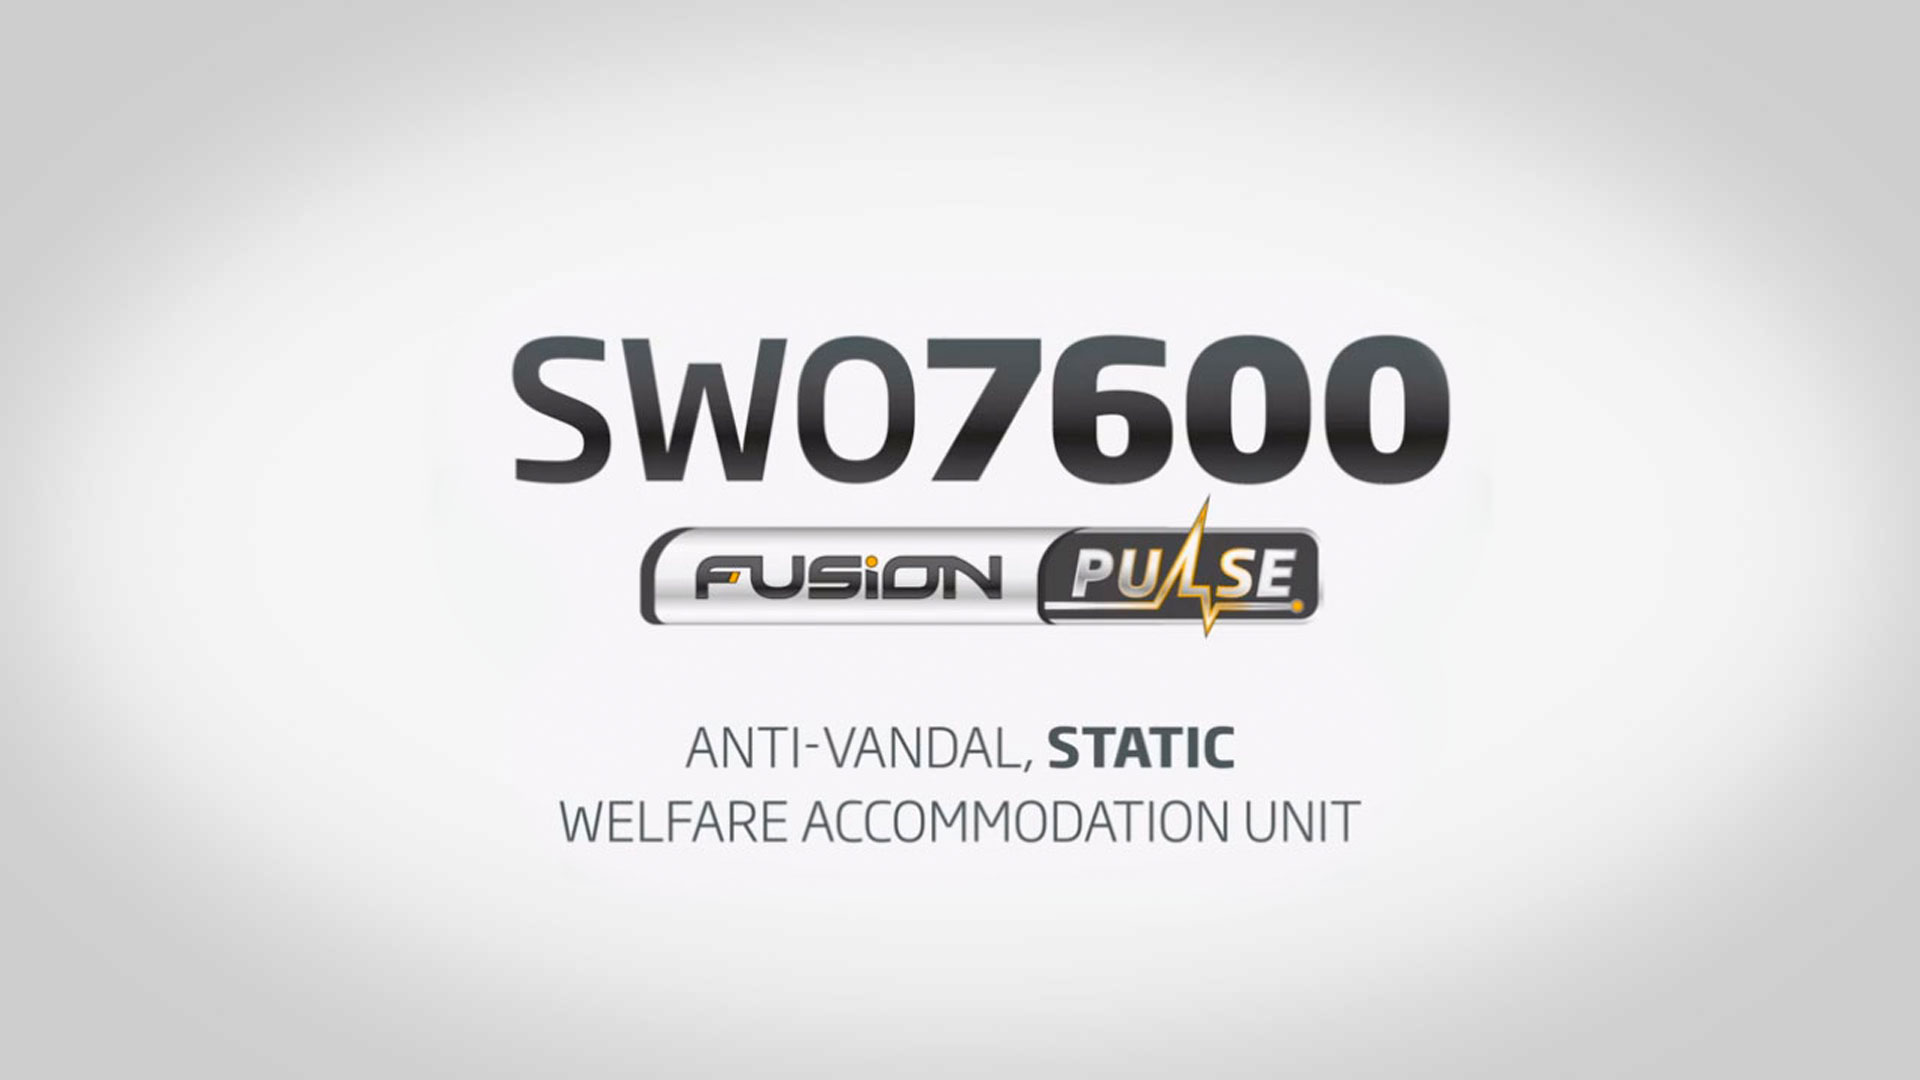 SWO7600 Full Flush